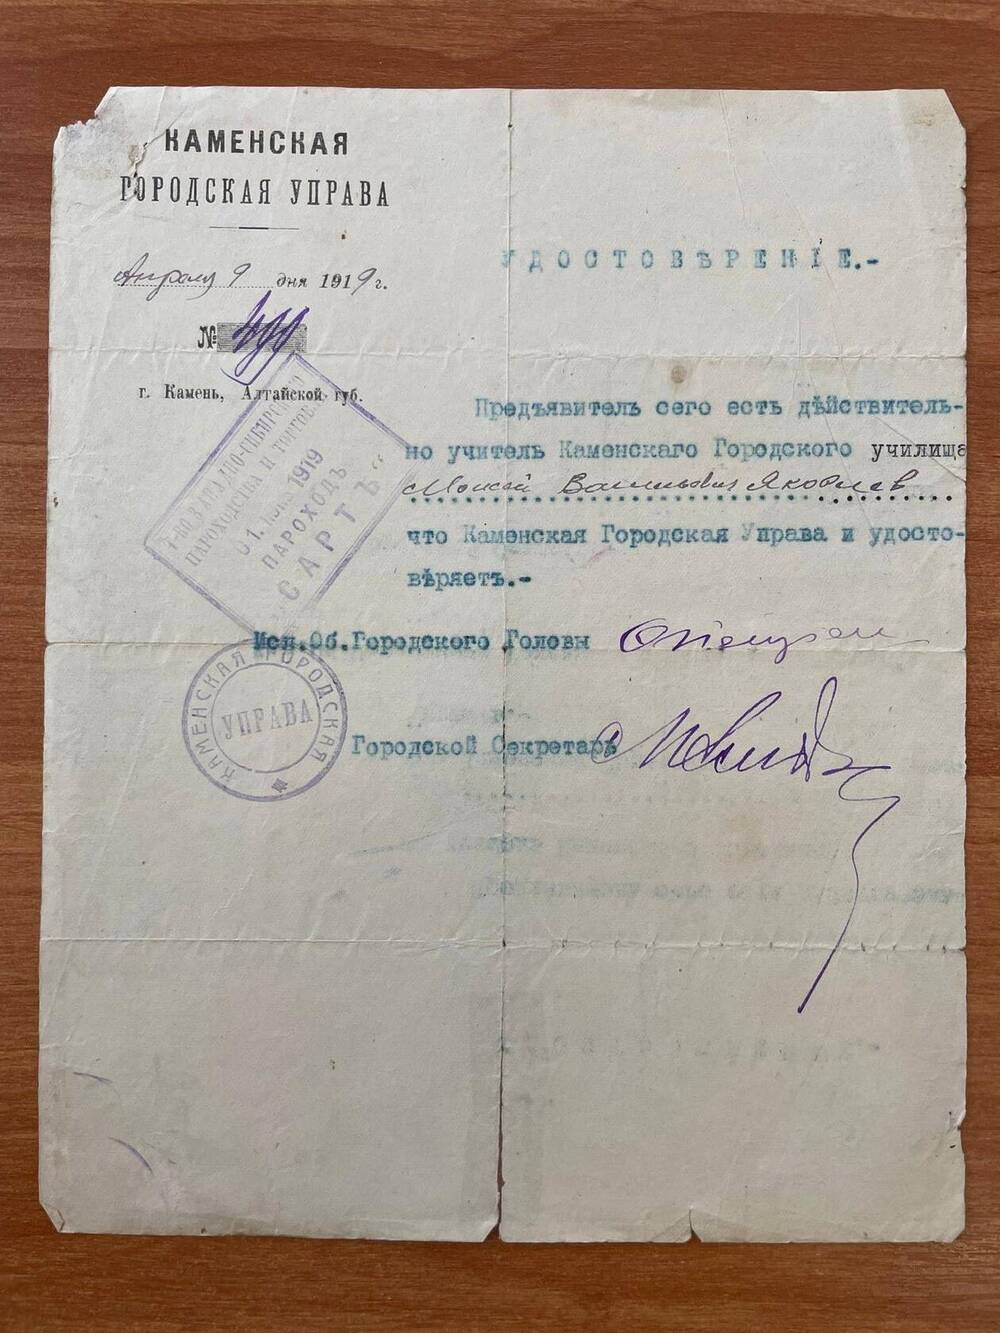 Удостоверение № 499 от 9 апреля 1919 года Каменской городской управы в том, что Яковлев Моисей Васильевич есть действительно учитель Каменского городского училища.